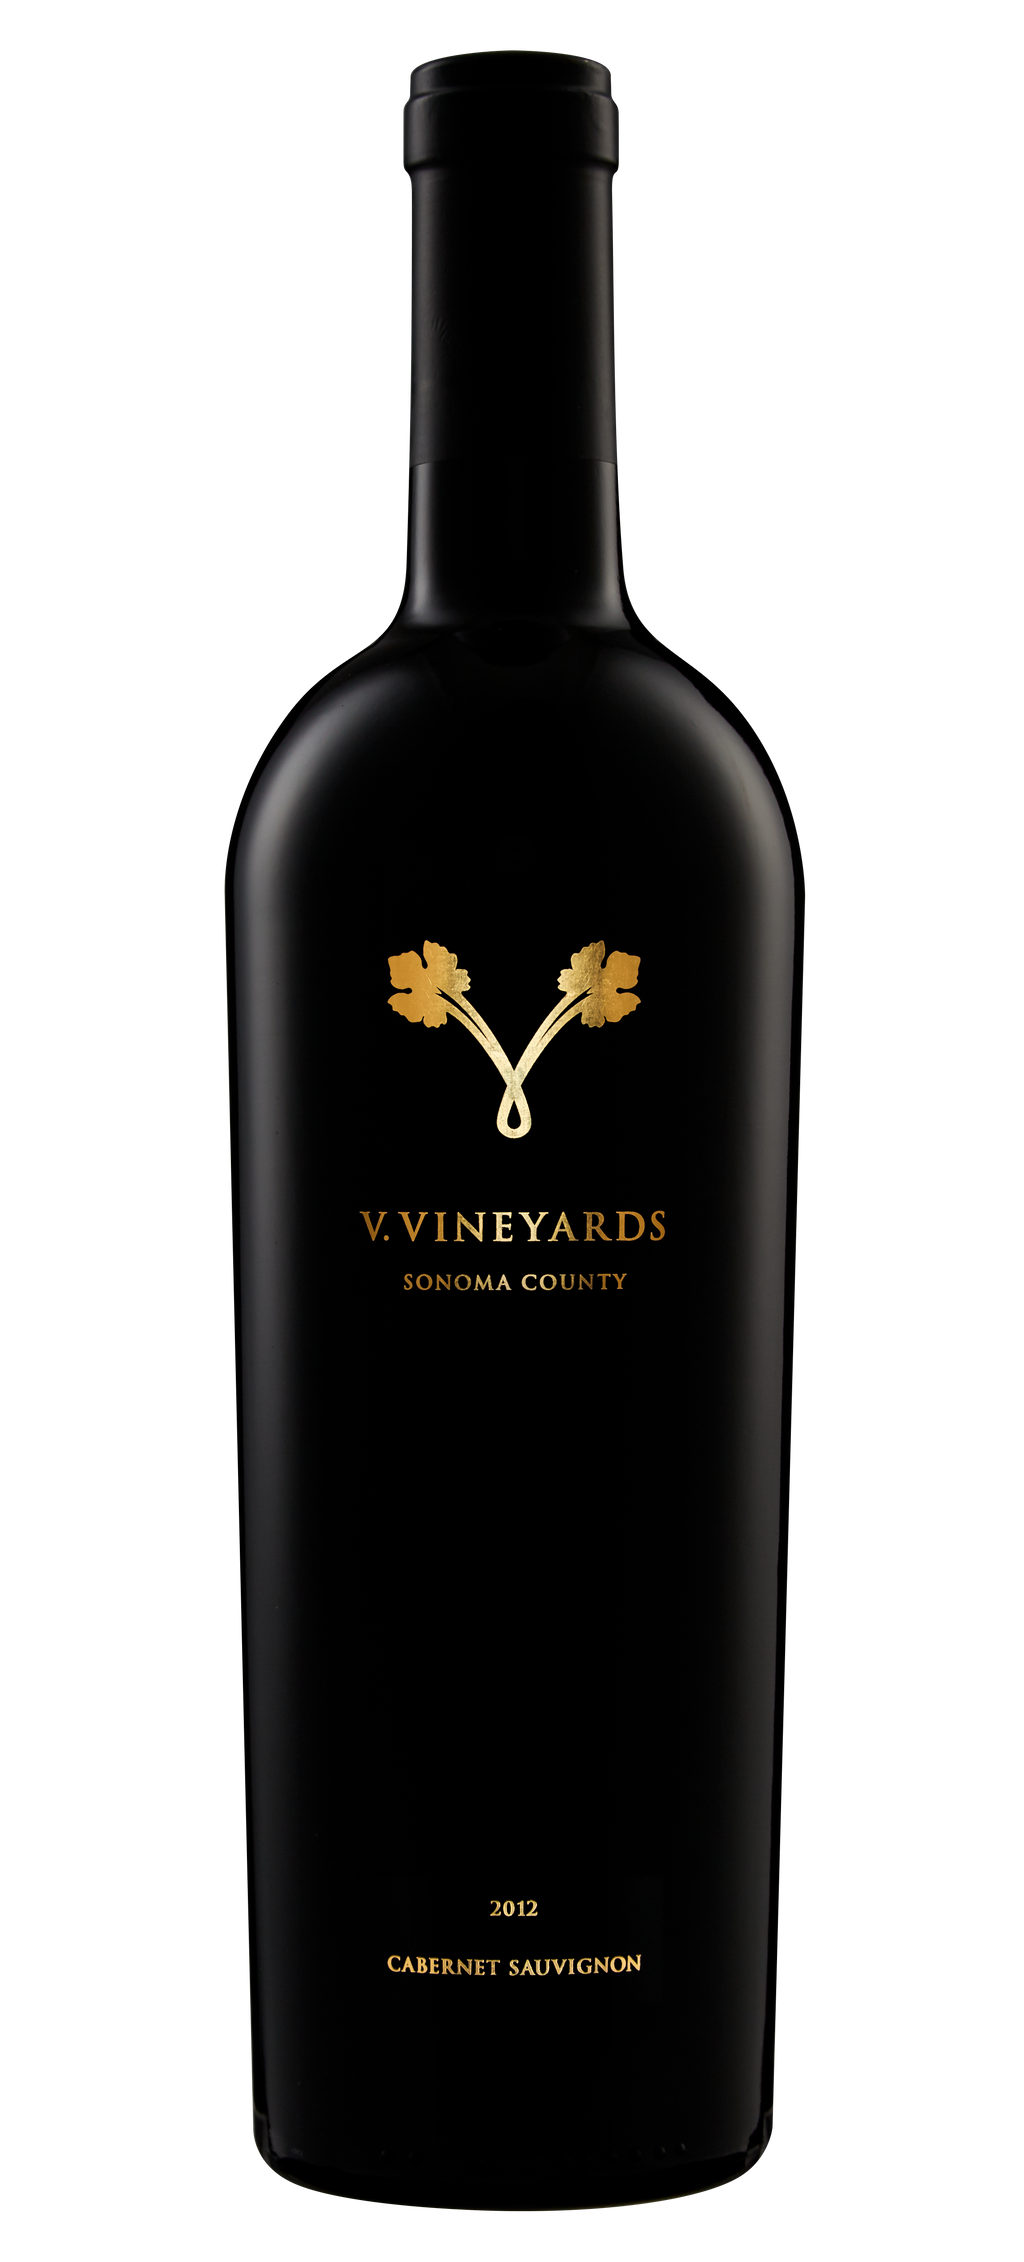 V. Vineyards 2012 Cabernet Sauvignon - Qorkz